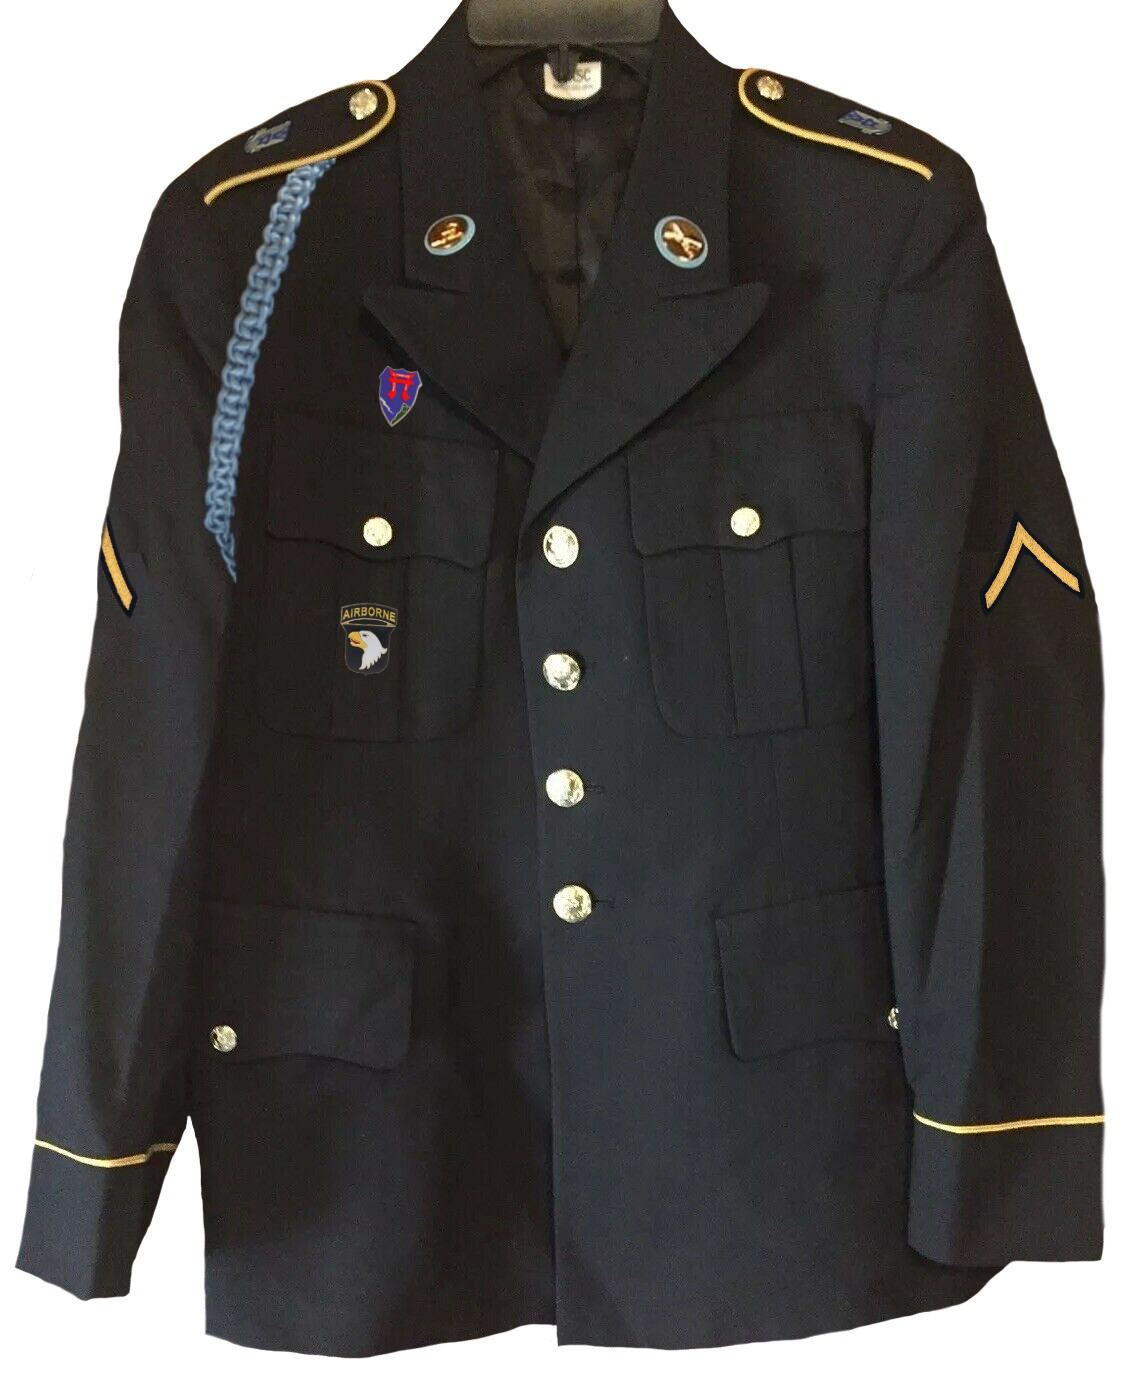 Die Uniform von Teichdorfer